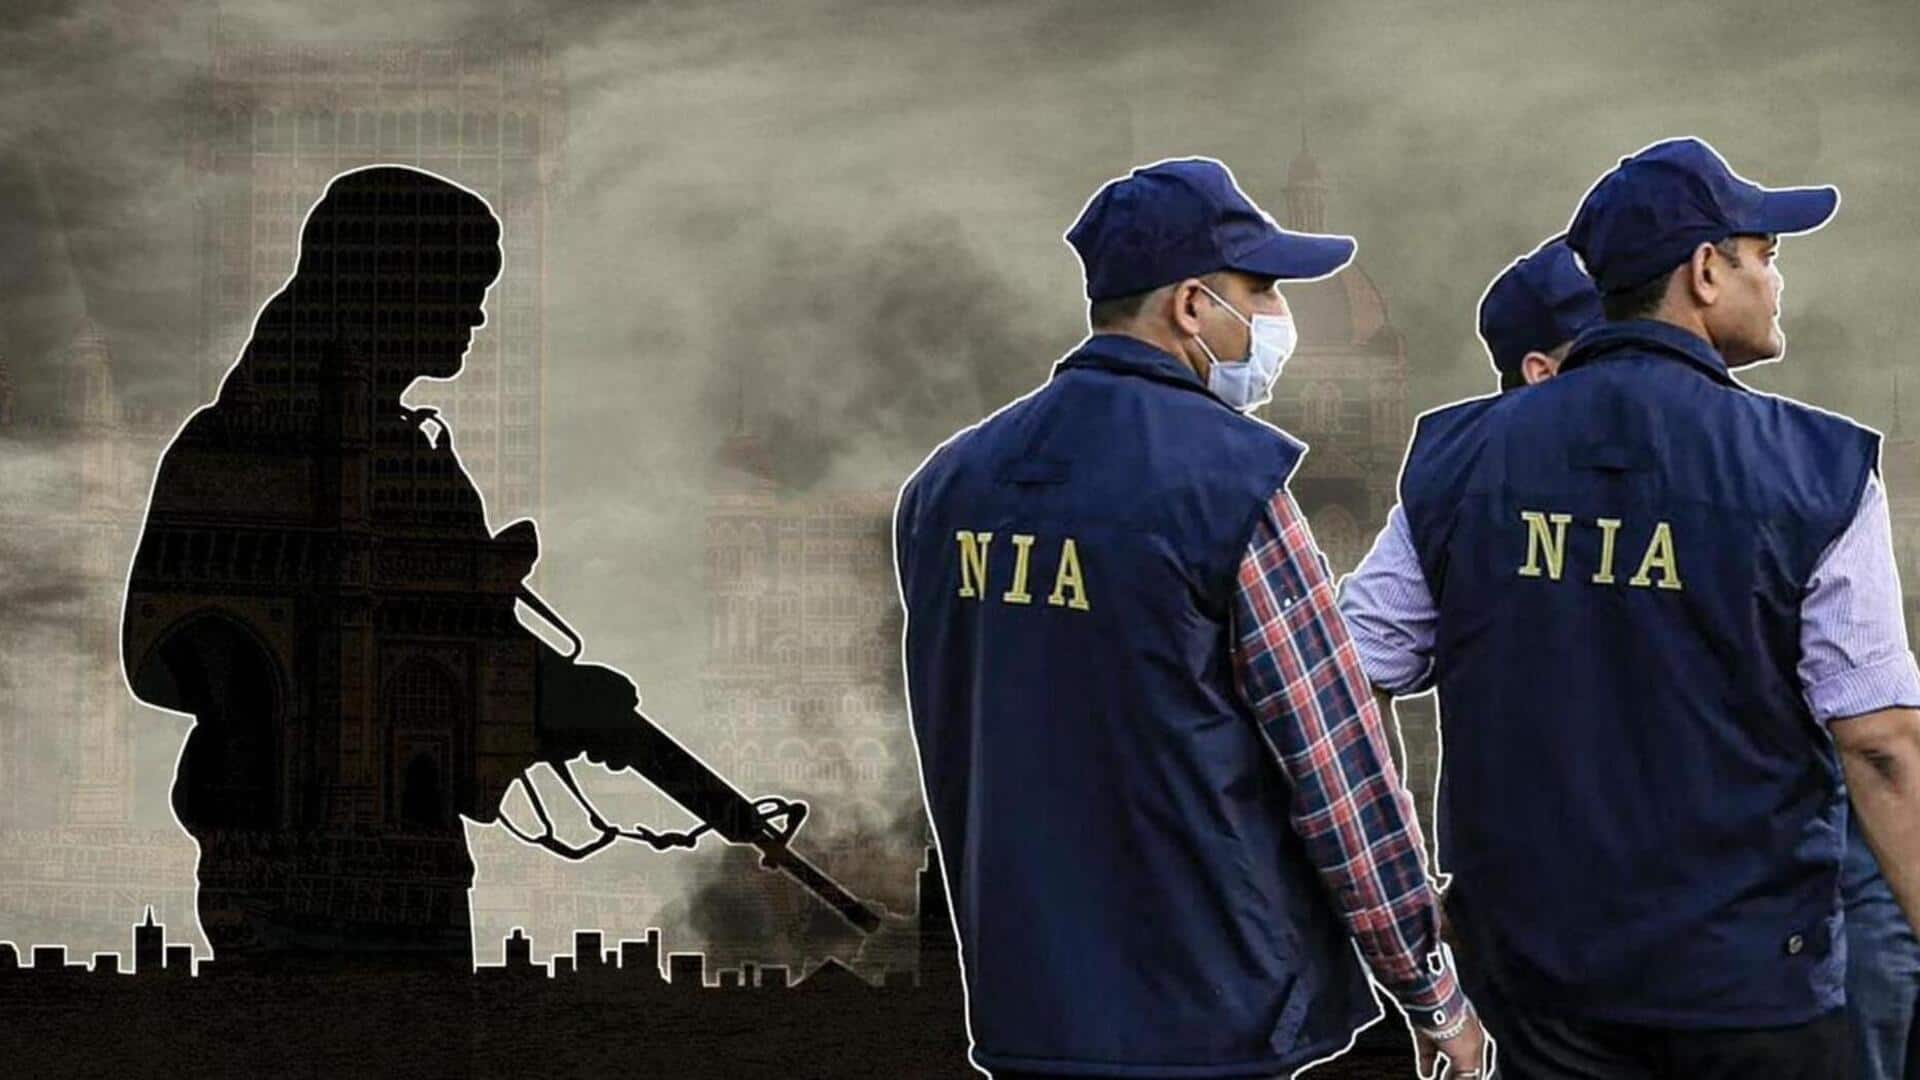 लश्कर-ए-तैयबा ने कराए थे राजौरी और पुंछ में हुए आतंकी हमले, NIA की जांच में खुलासा